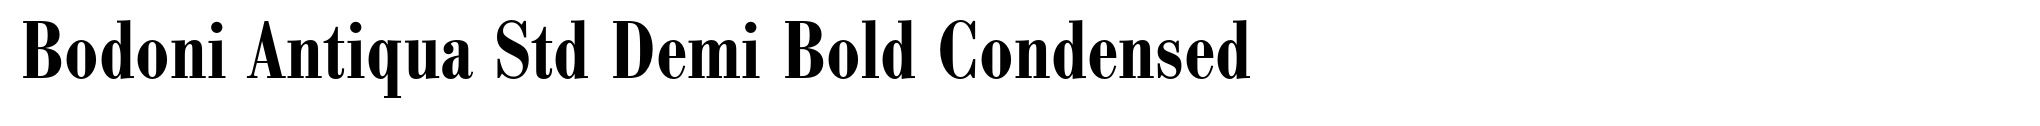 Bodoni Antiqua Std Demi Bold Condensed image